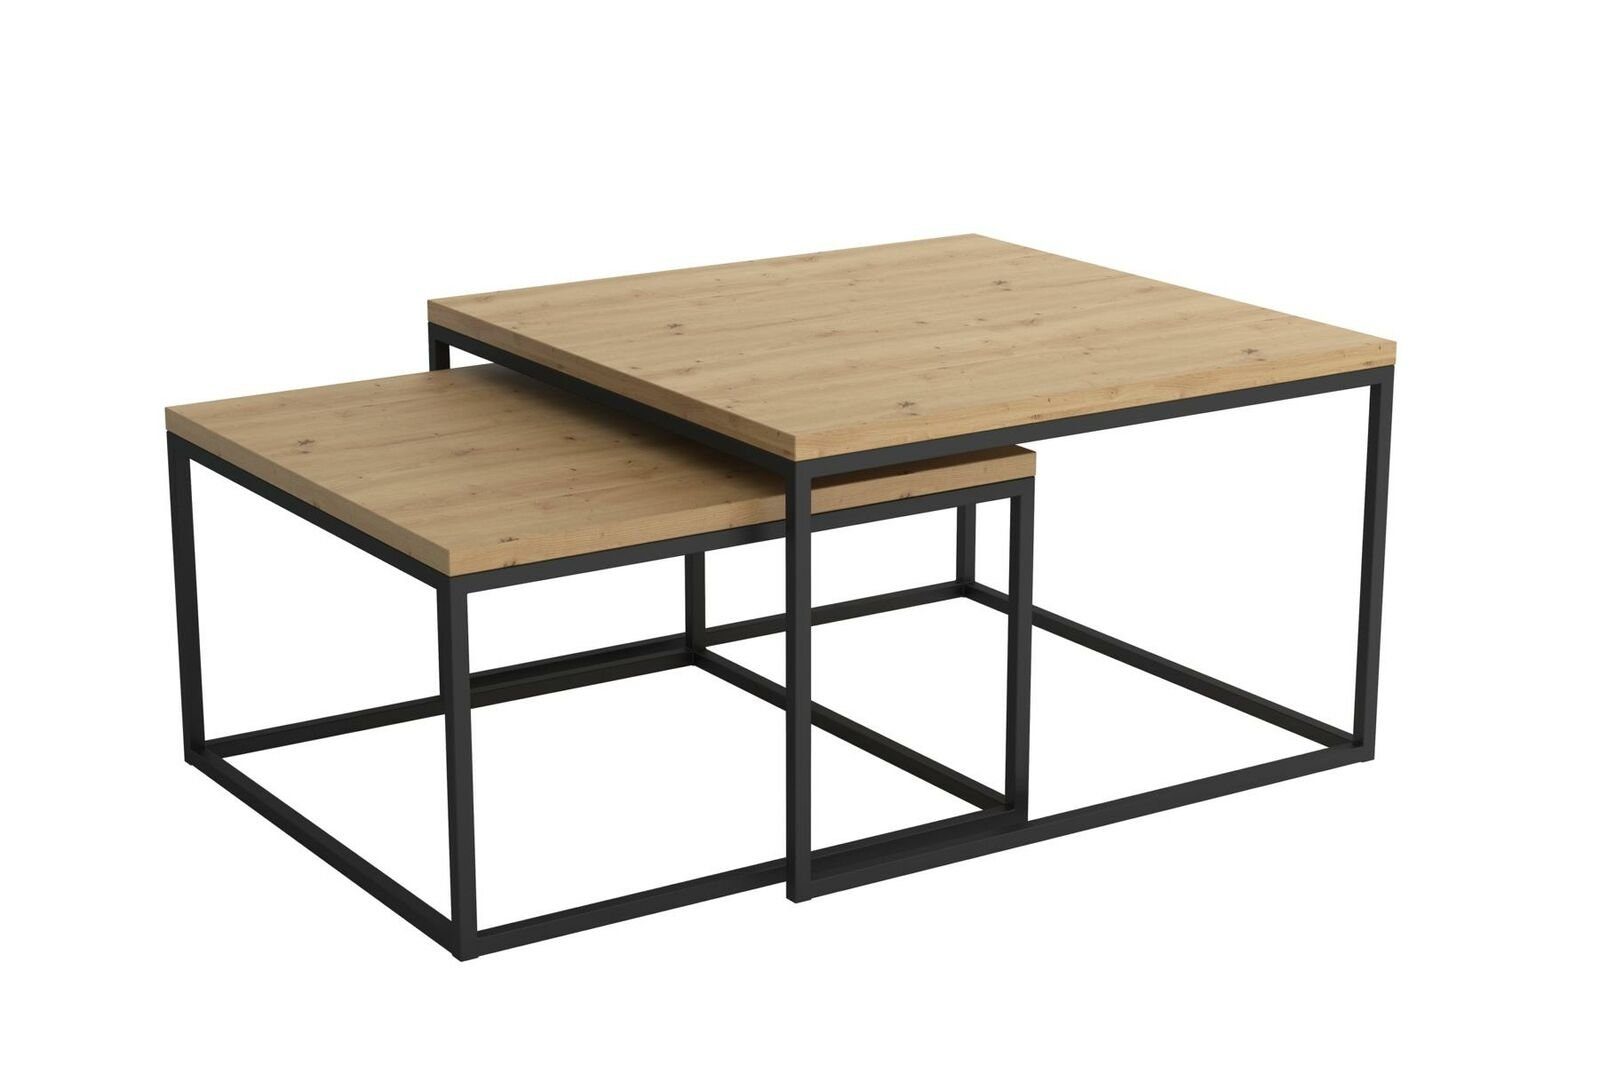 Beistelltisch Design Tische Set Couchtisch 2x 2x Doppel Doppel Kaffeetisch Kaffeetisch Tische Set JVmoebel Couchtisch, Beistelltisch Design Couchtisch